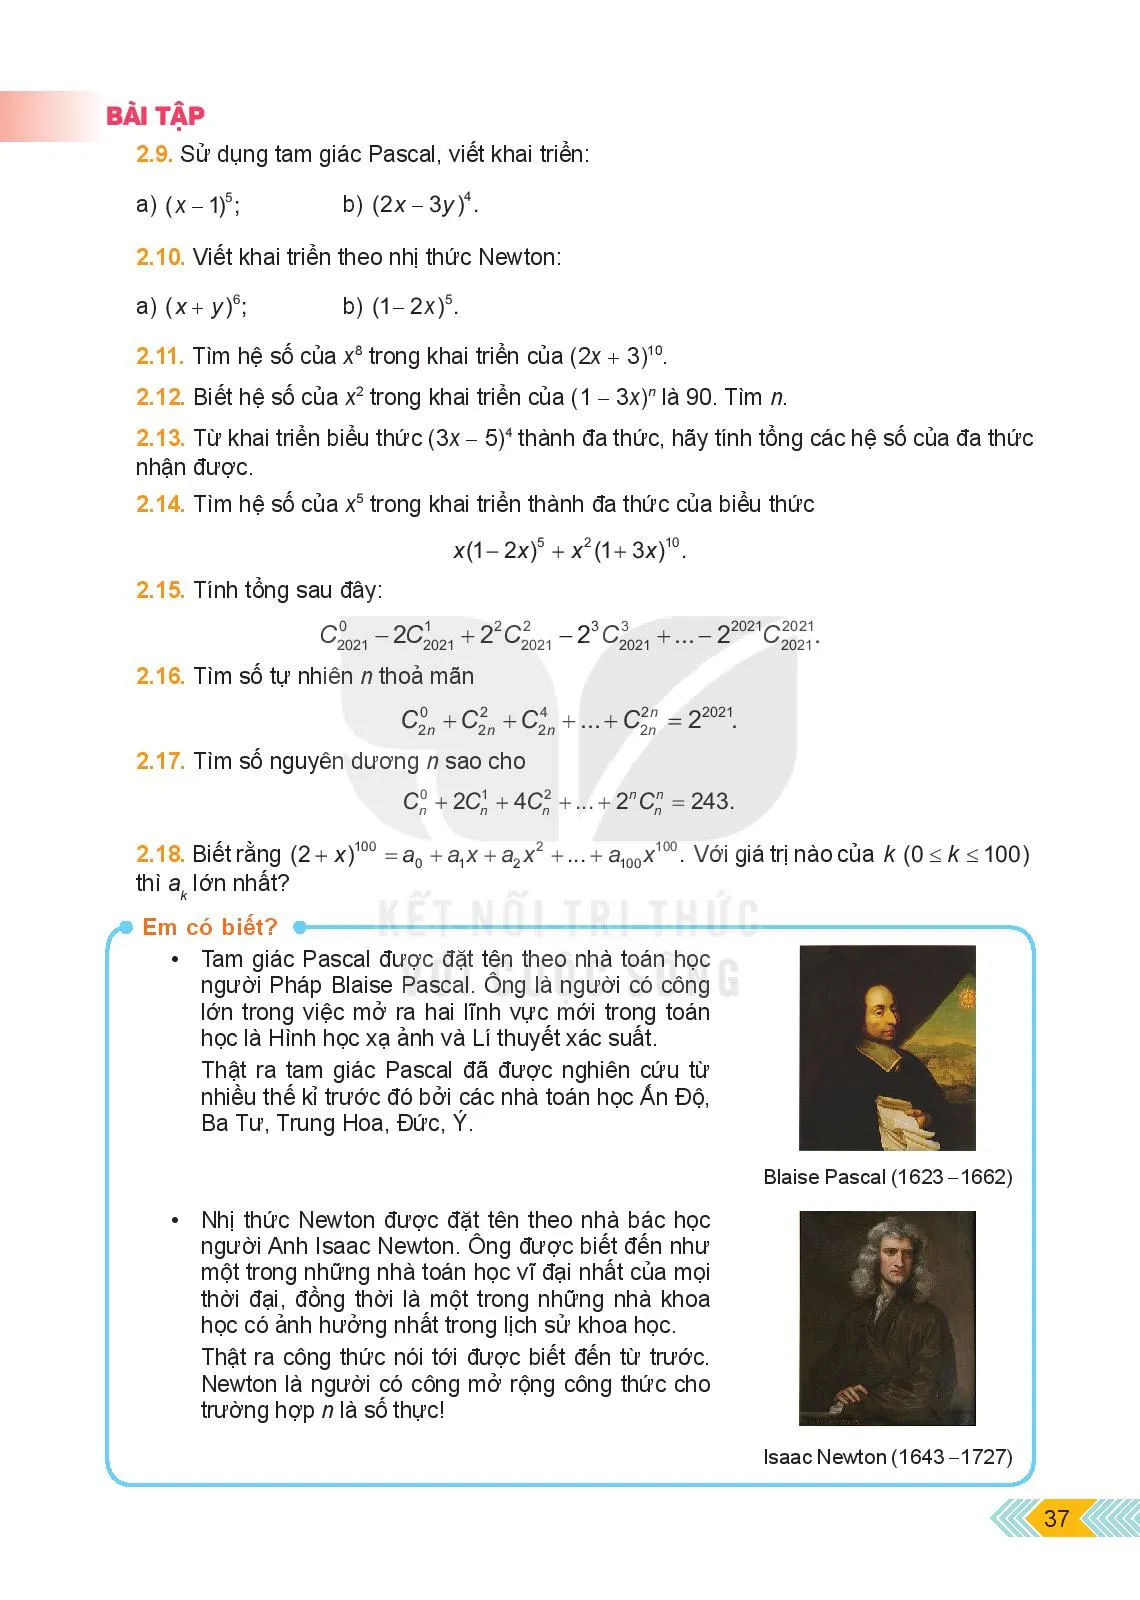 Bài 4. Nhị thức Newton